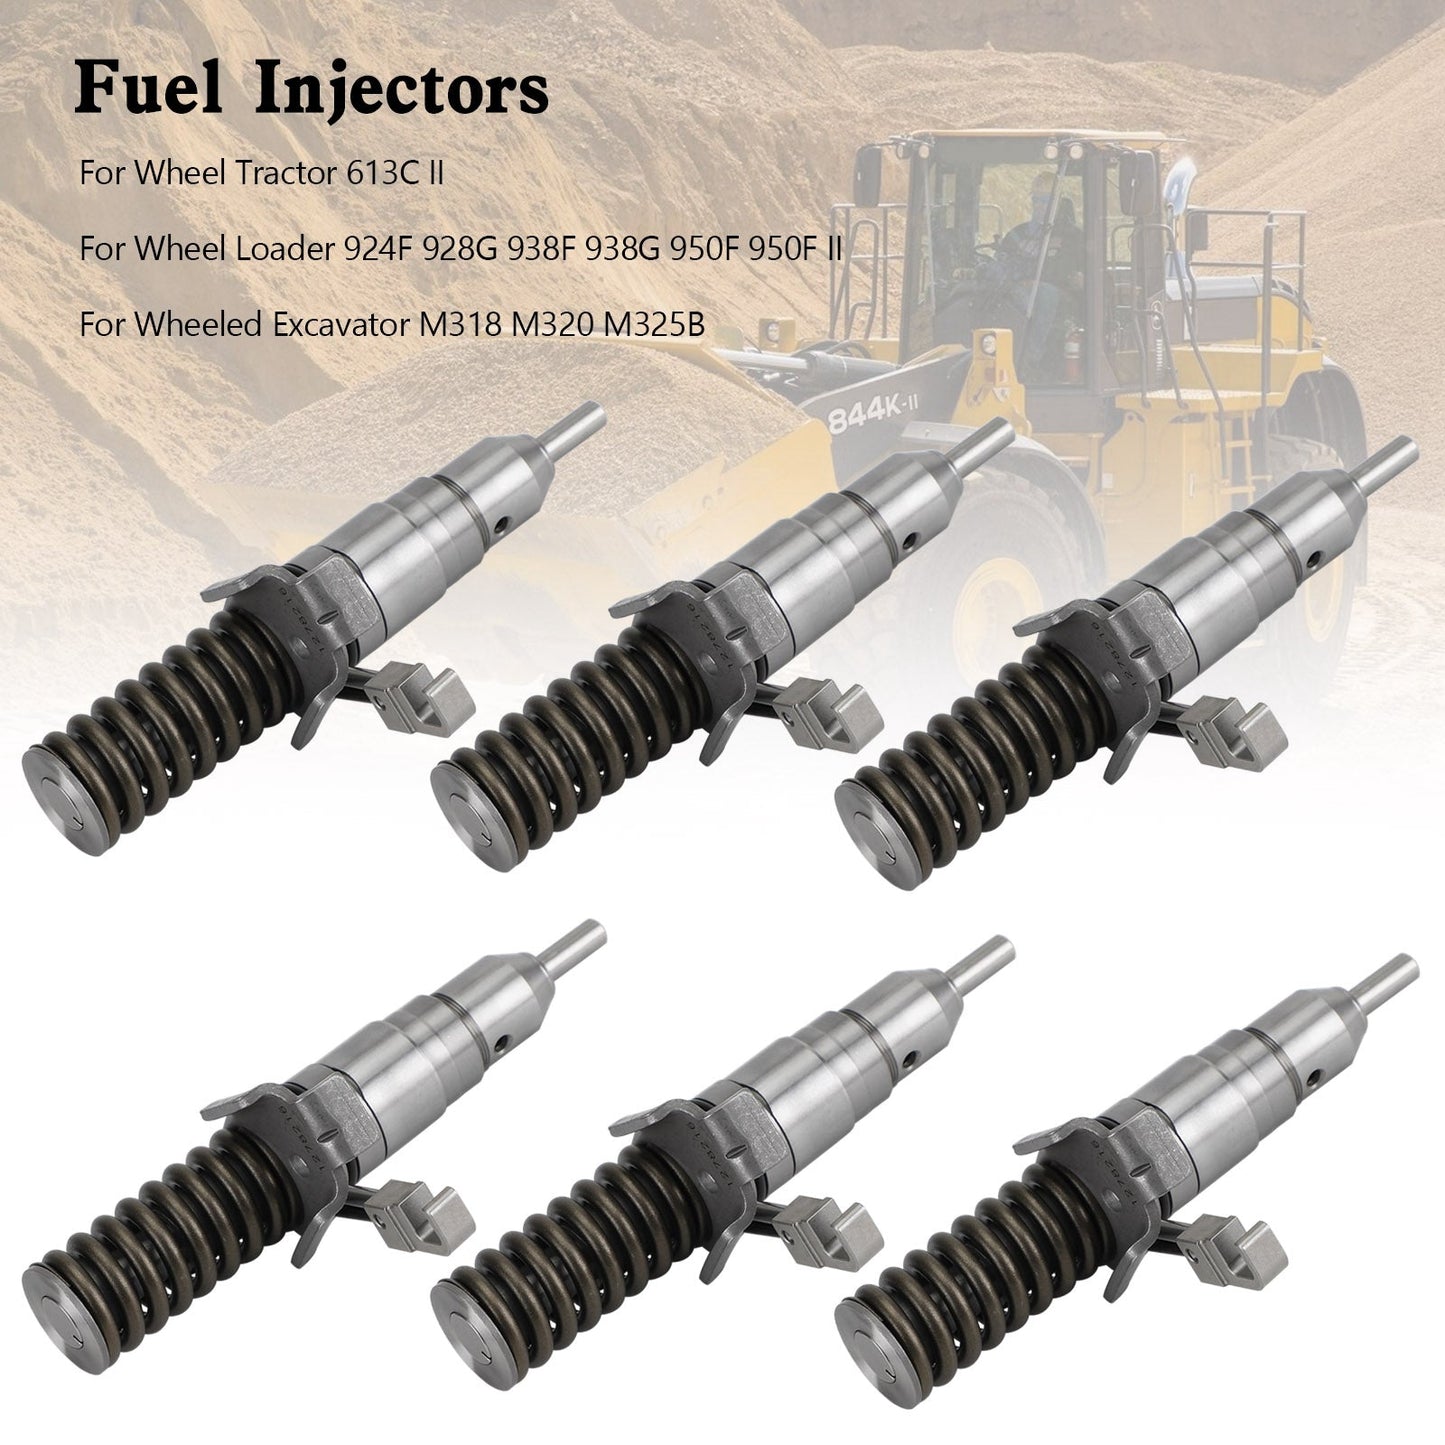 6PCS Fuel Injector 127-8205 0R-8682 1278216 127-8222 127-8205 0R-8682 fit Caterpillar 3116 3114